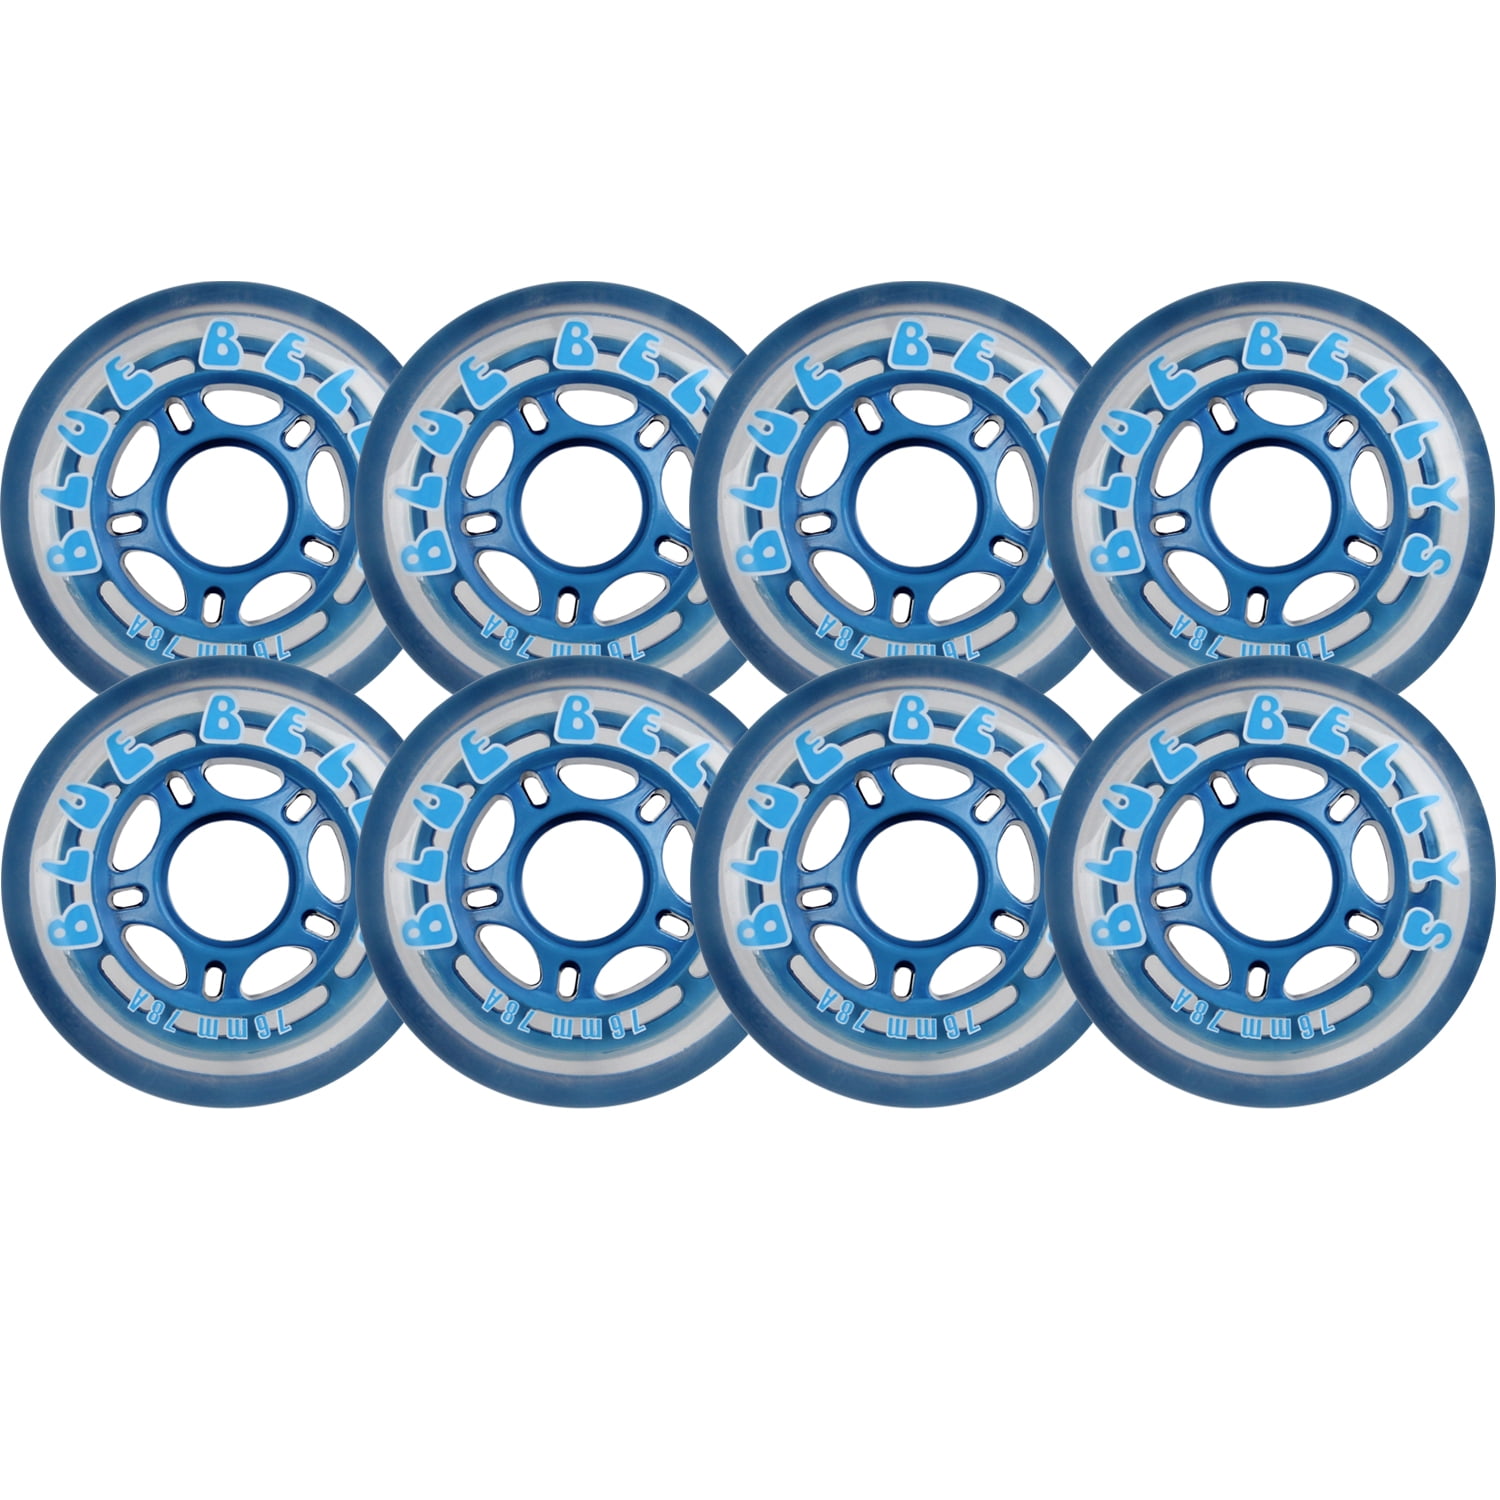 BLUE BELLYS 76mm 78a Roller Inline Skate Wheels 8-Pack - Walmart.com